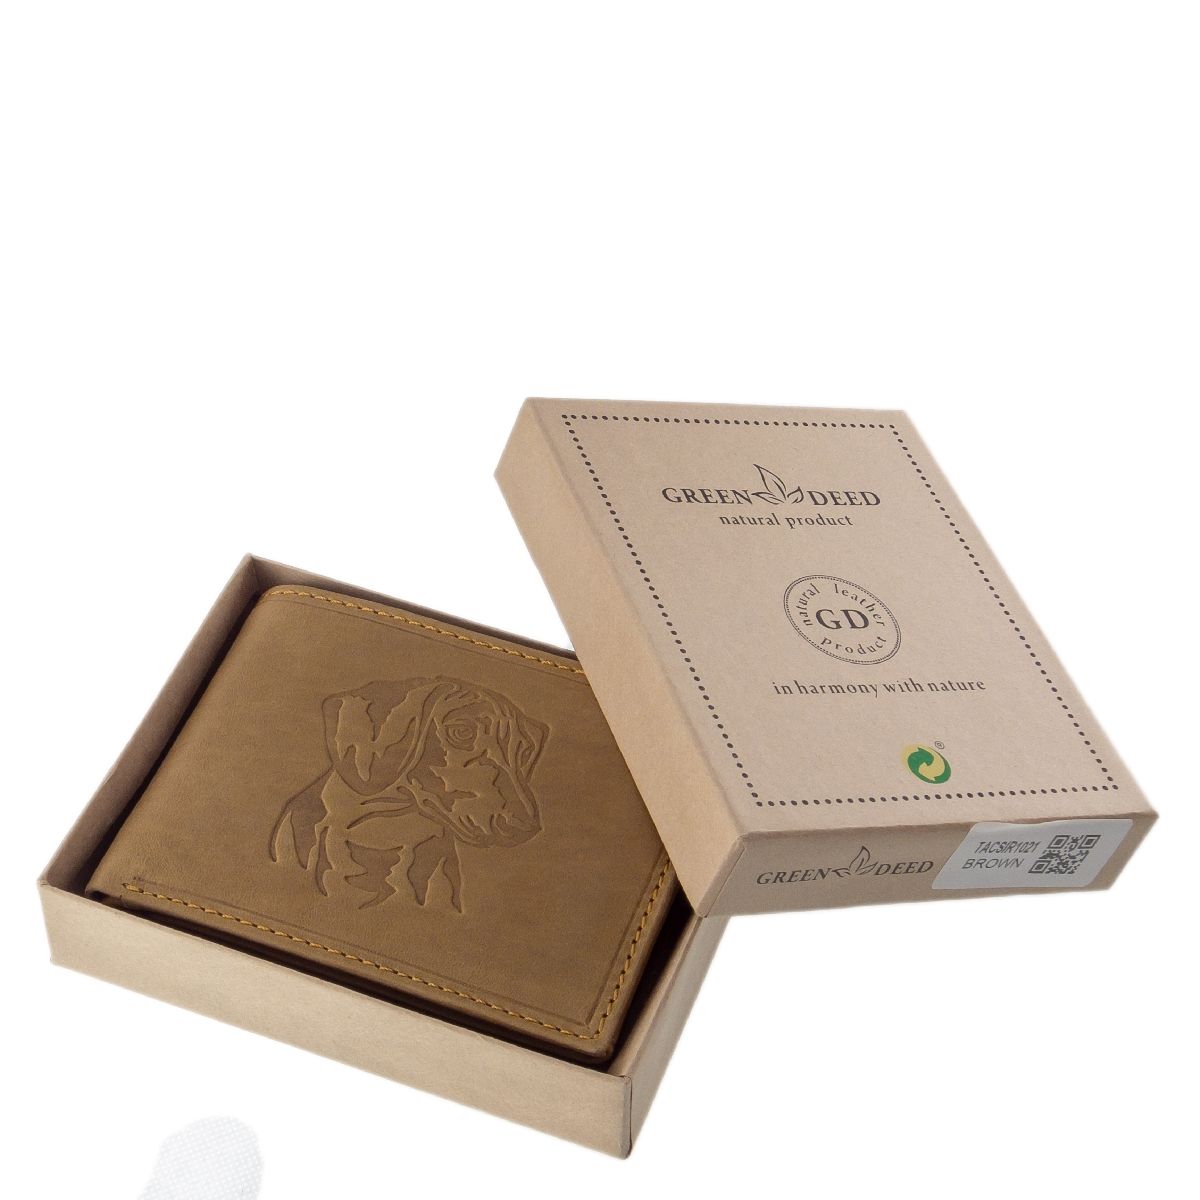 Hellbraune RFID Geldbörse aus unverwüstlichem Büffelleder mit Dackel / Teckel. Das perfekte Geschenk für Jagdhundefreunde